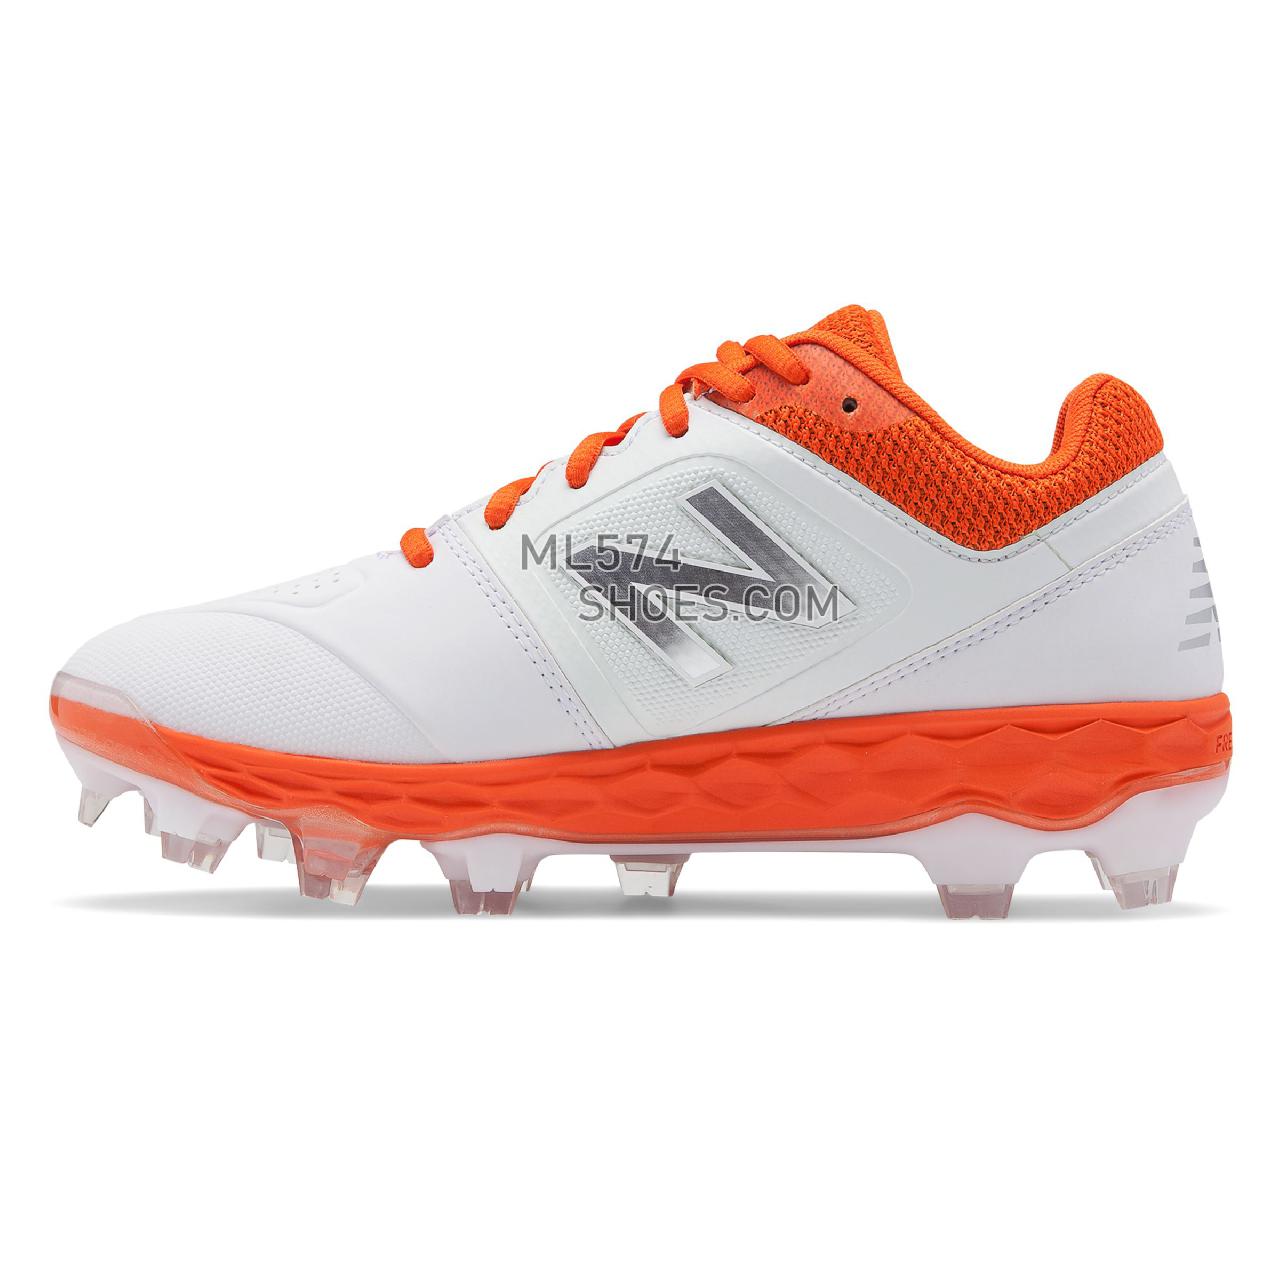 New Balance Fresh Foam SPVELO - Women's Softball - Orange with White - SPVELOO1